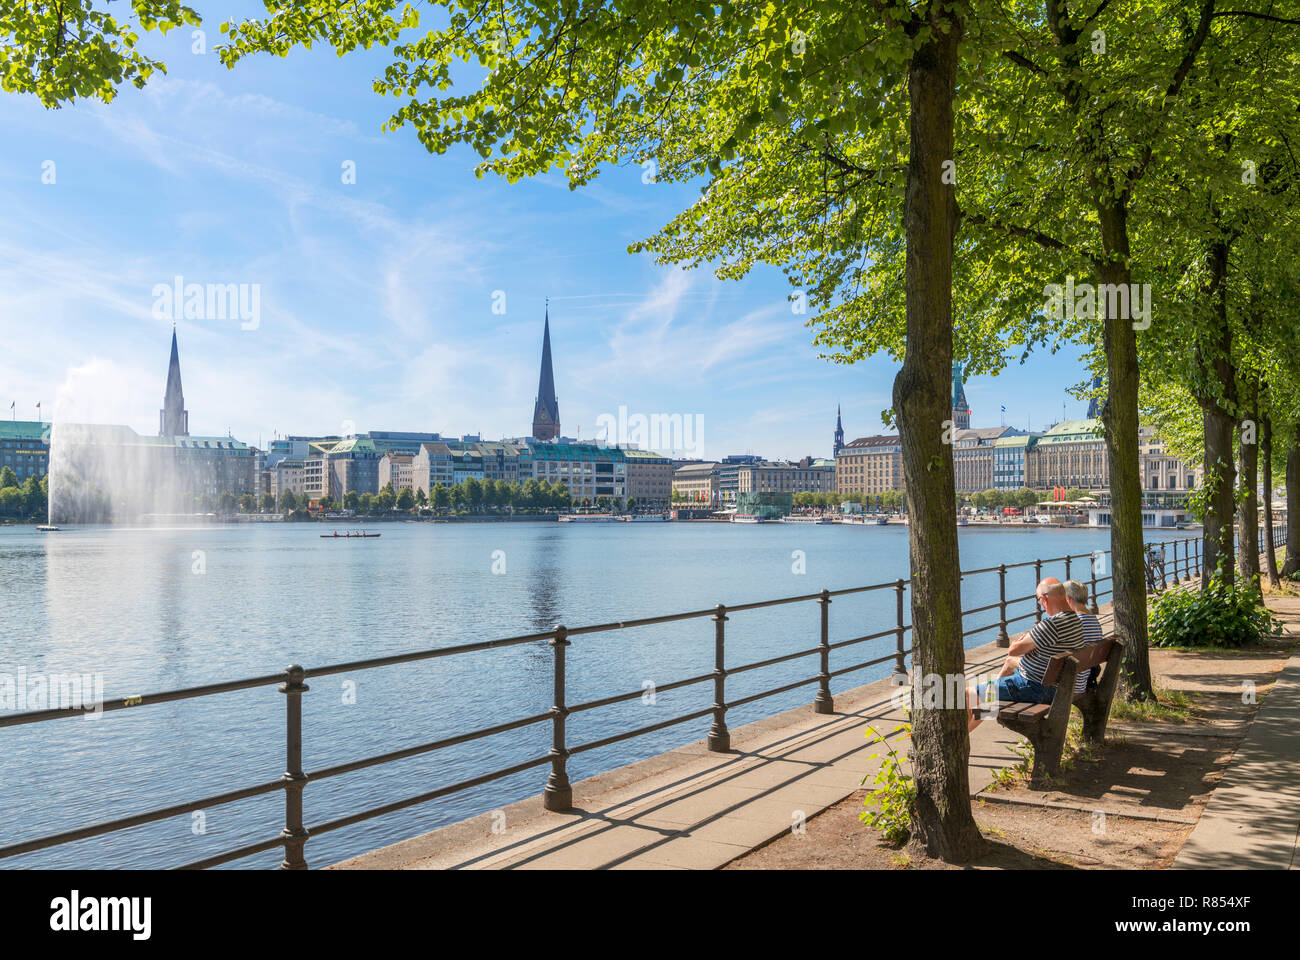 Coppia seduta su una panchina sulle rive del lago Binnenalster con lo skyline della città dietro, Amburgo, Germania Foto Stock